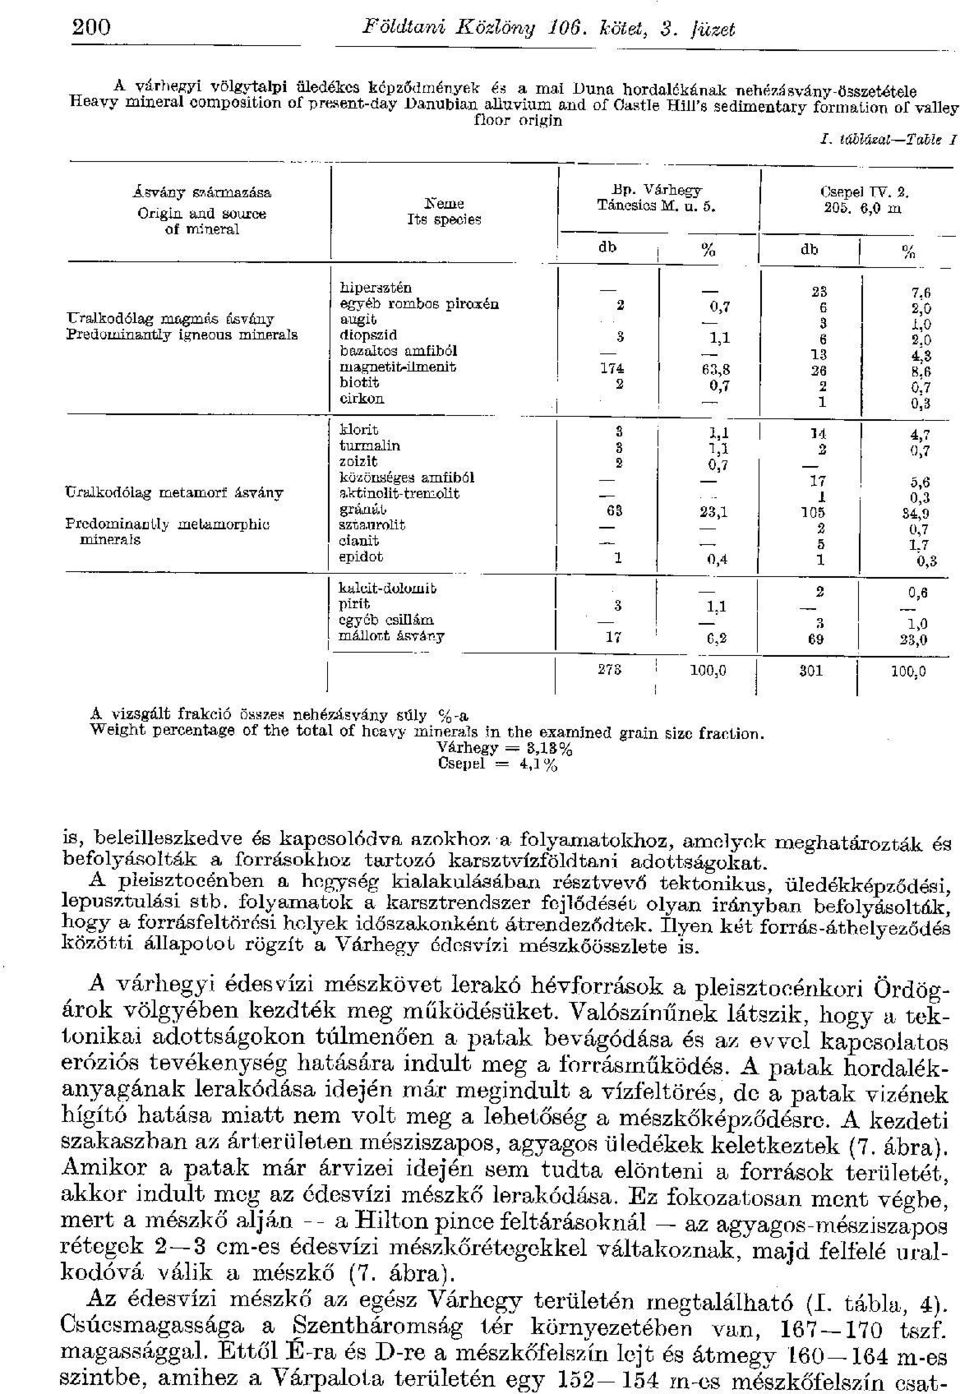 formation of valley floor origin /. táblázat Table I Ásvány származása Origin and source of mineral Kerne Its species Bp. Várhegy Táncsics M. u. 5. Csepel IV. 2. 208.